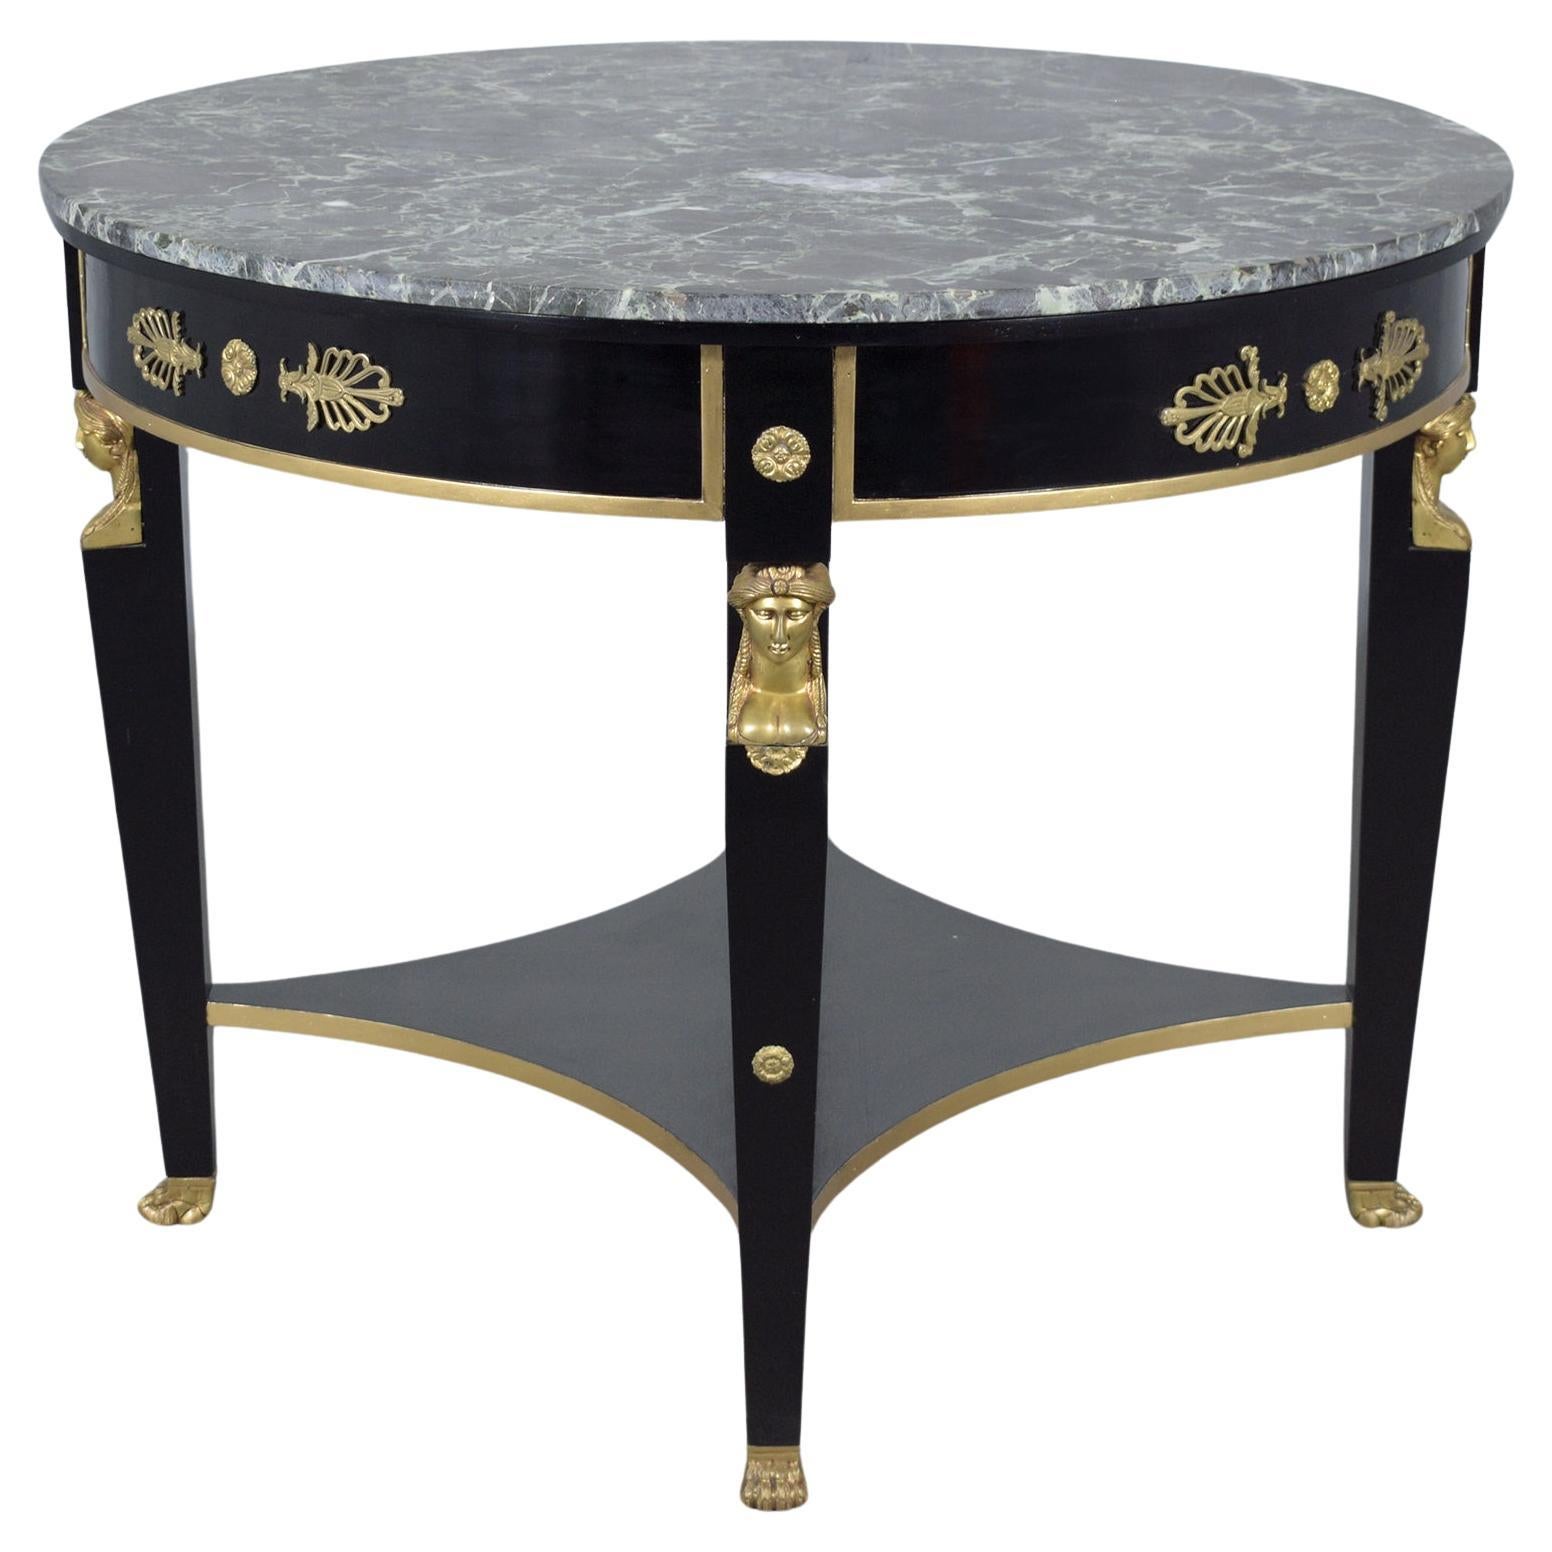 Table centrale ronde de style Empire français : Elegance en acajou et marbre